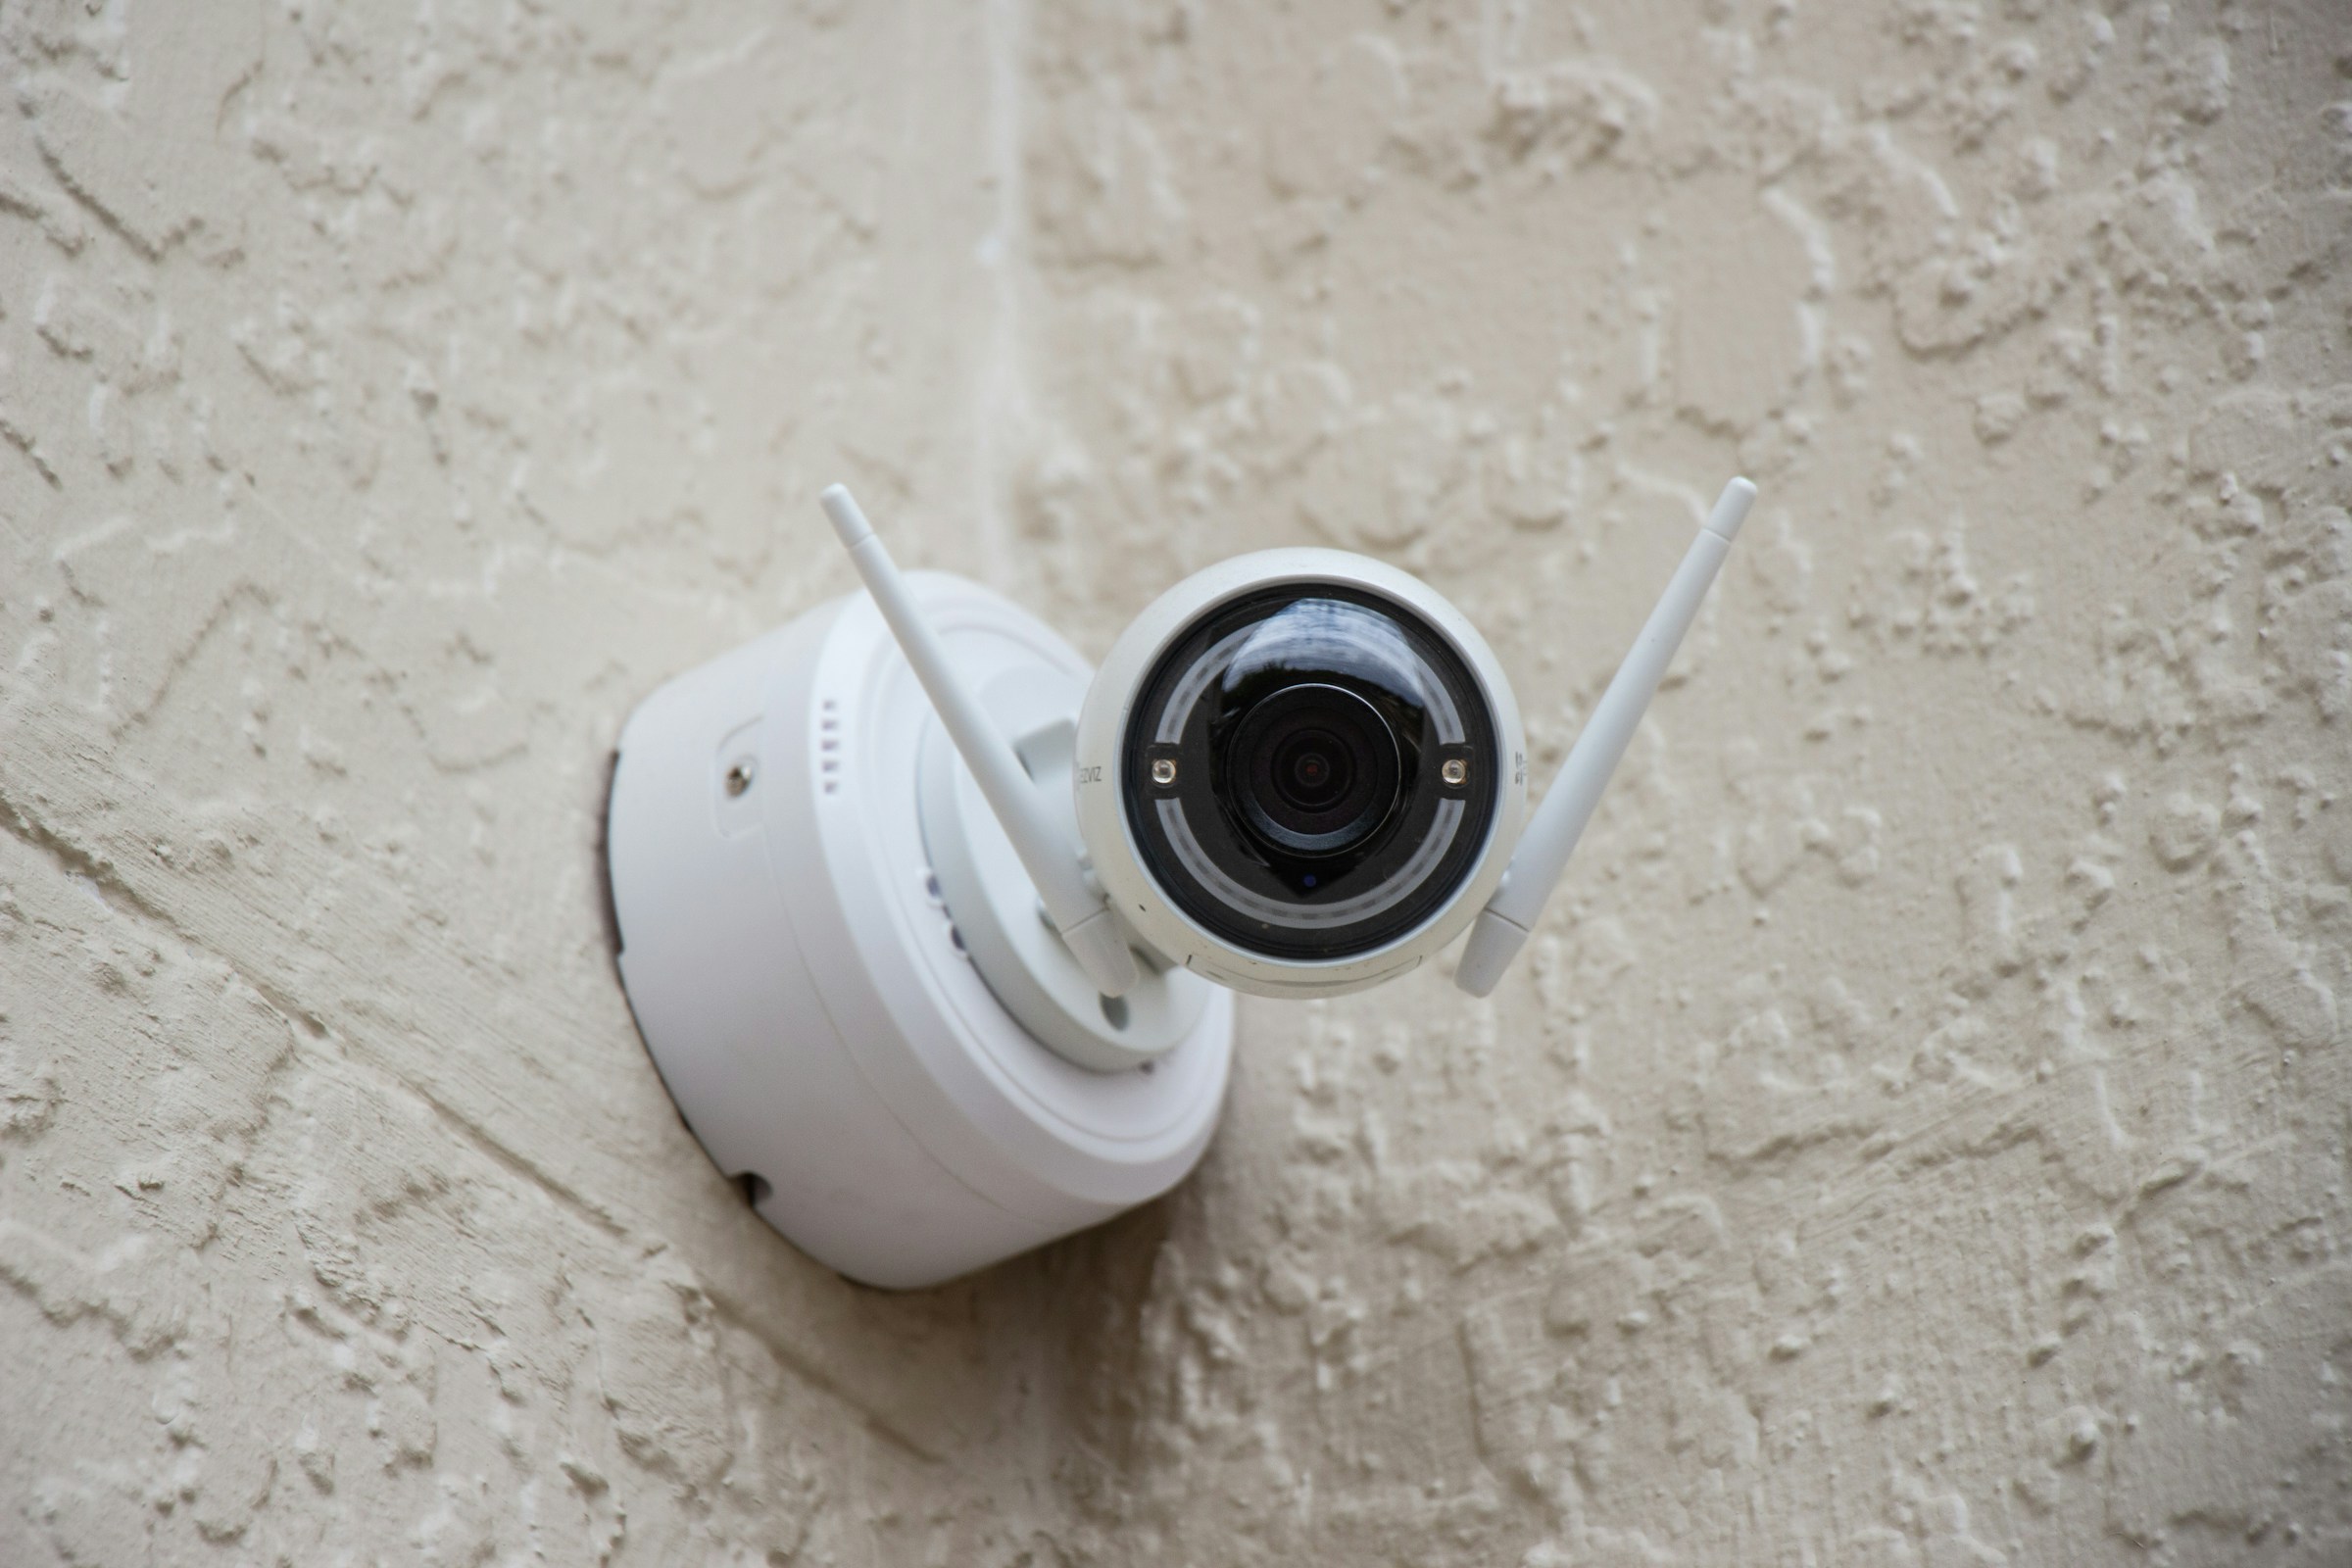 Une caméra de surveillance blanche | Source : Unsplash